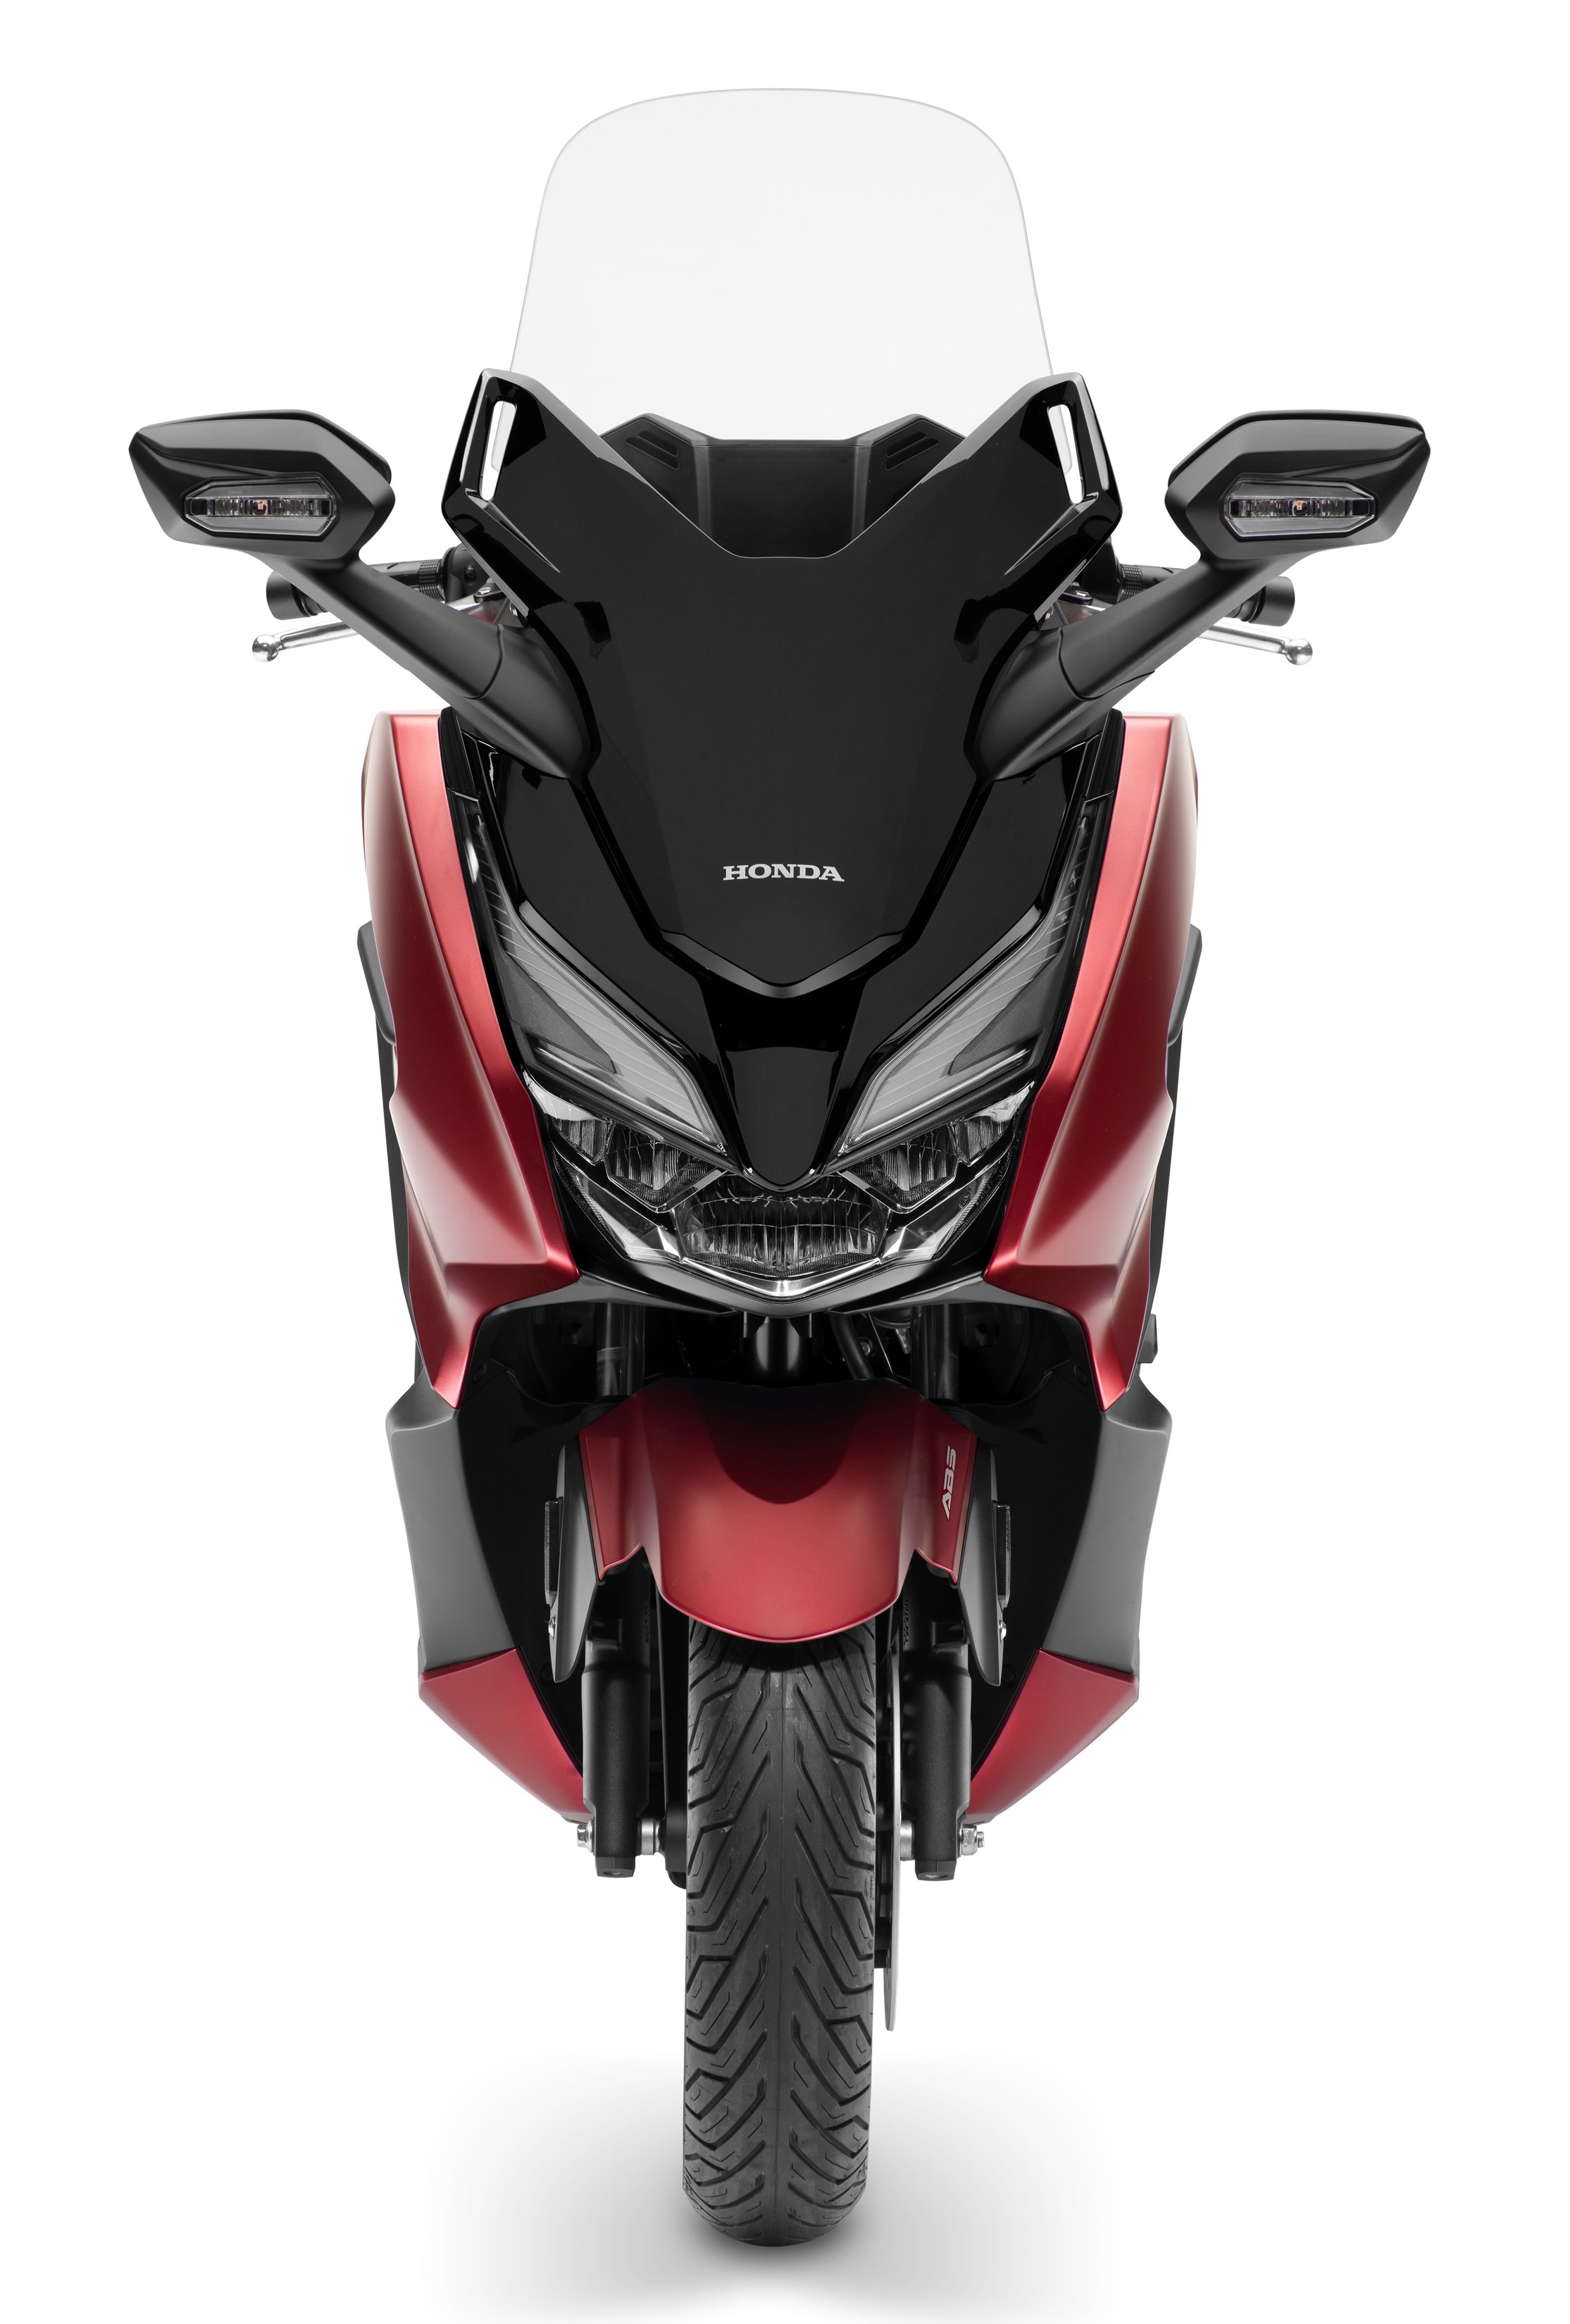 Honda Forza 125 Price In India 2020